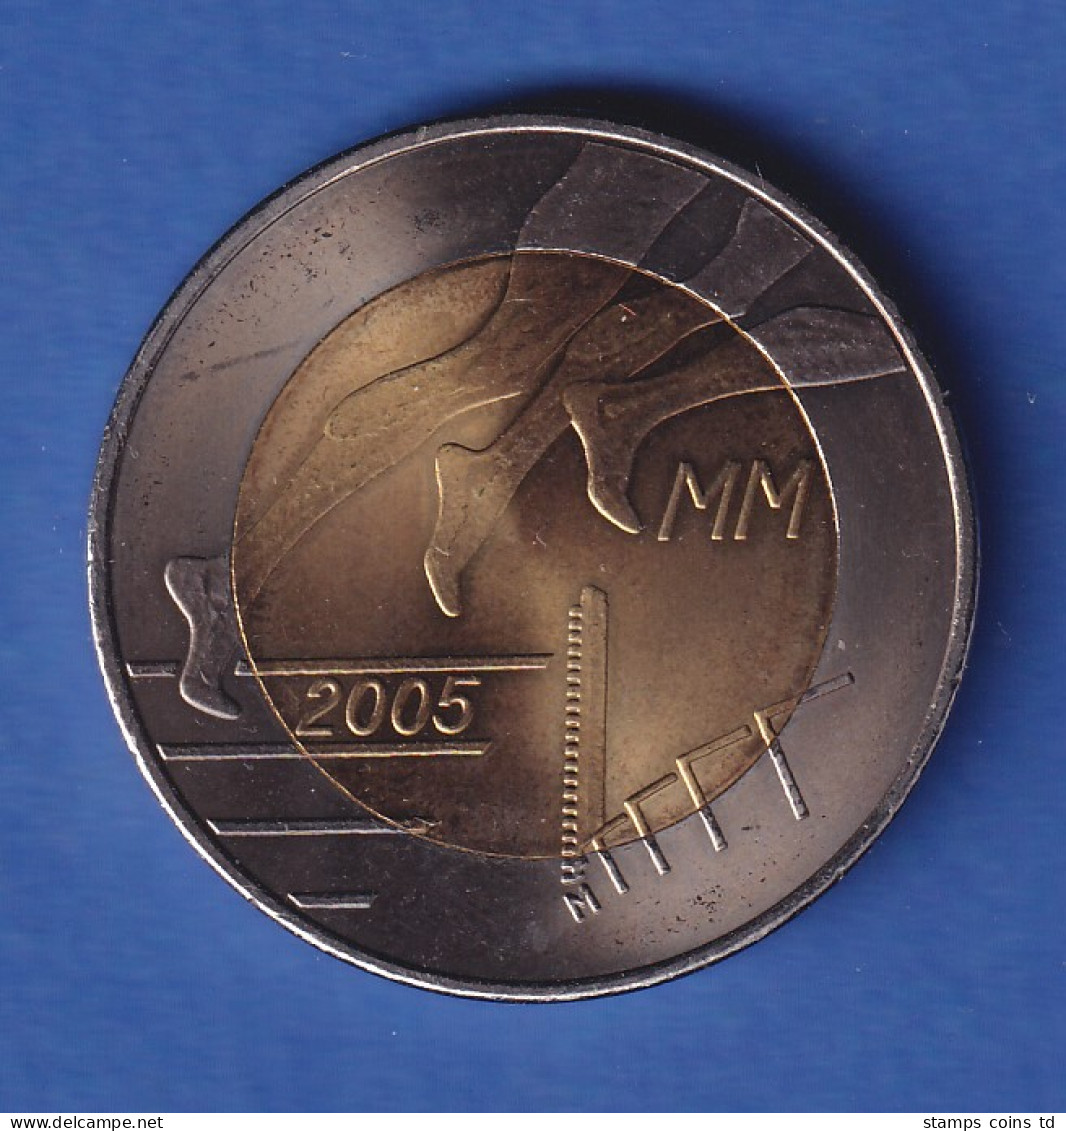 Finnland 2005 Leichtathletik-WM  5-Euro-Sondermünze  - Finlande